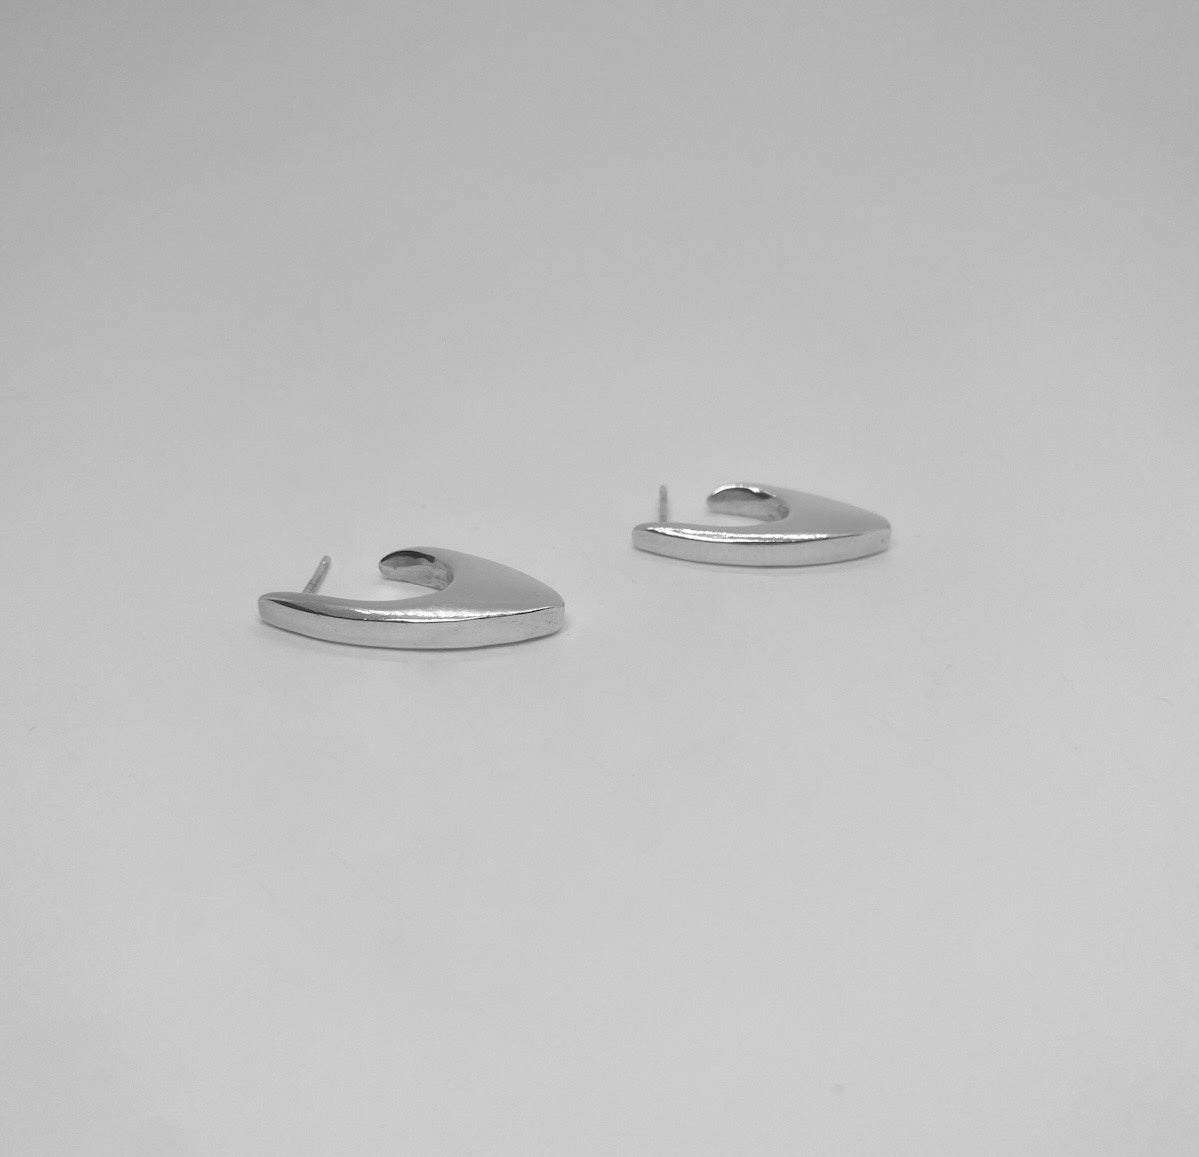 Handmade earrings made of 925 silver